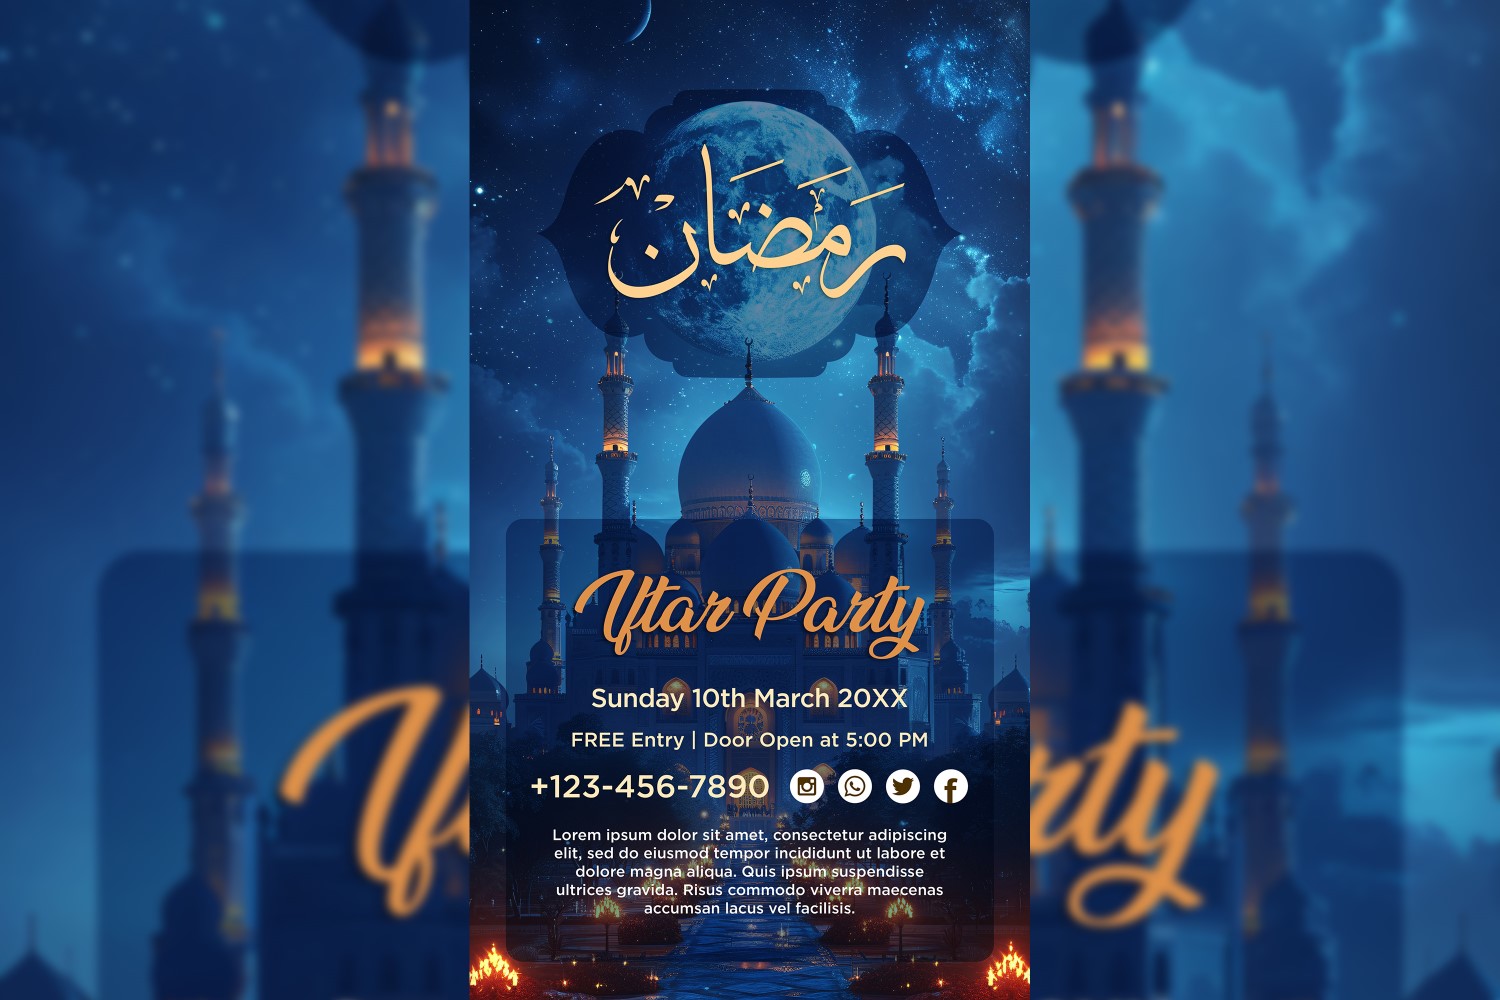 Ramadan Iftar Party Poster Design Template 08